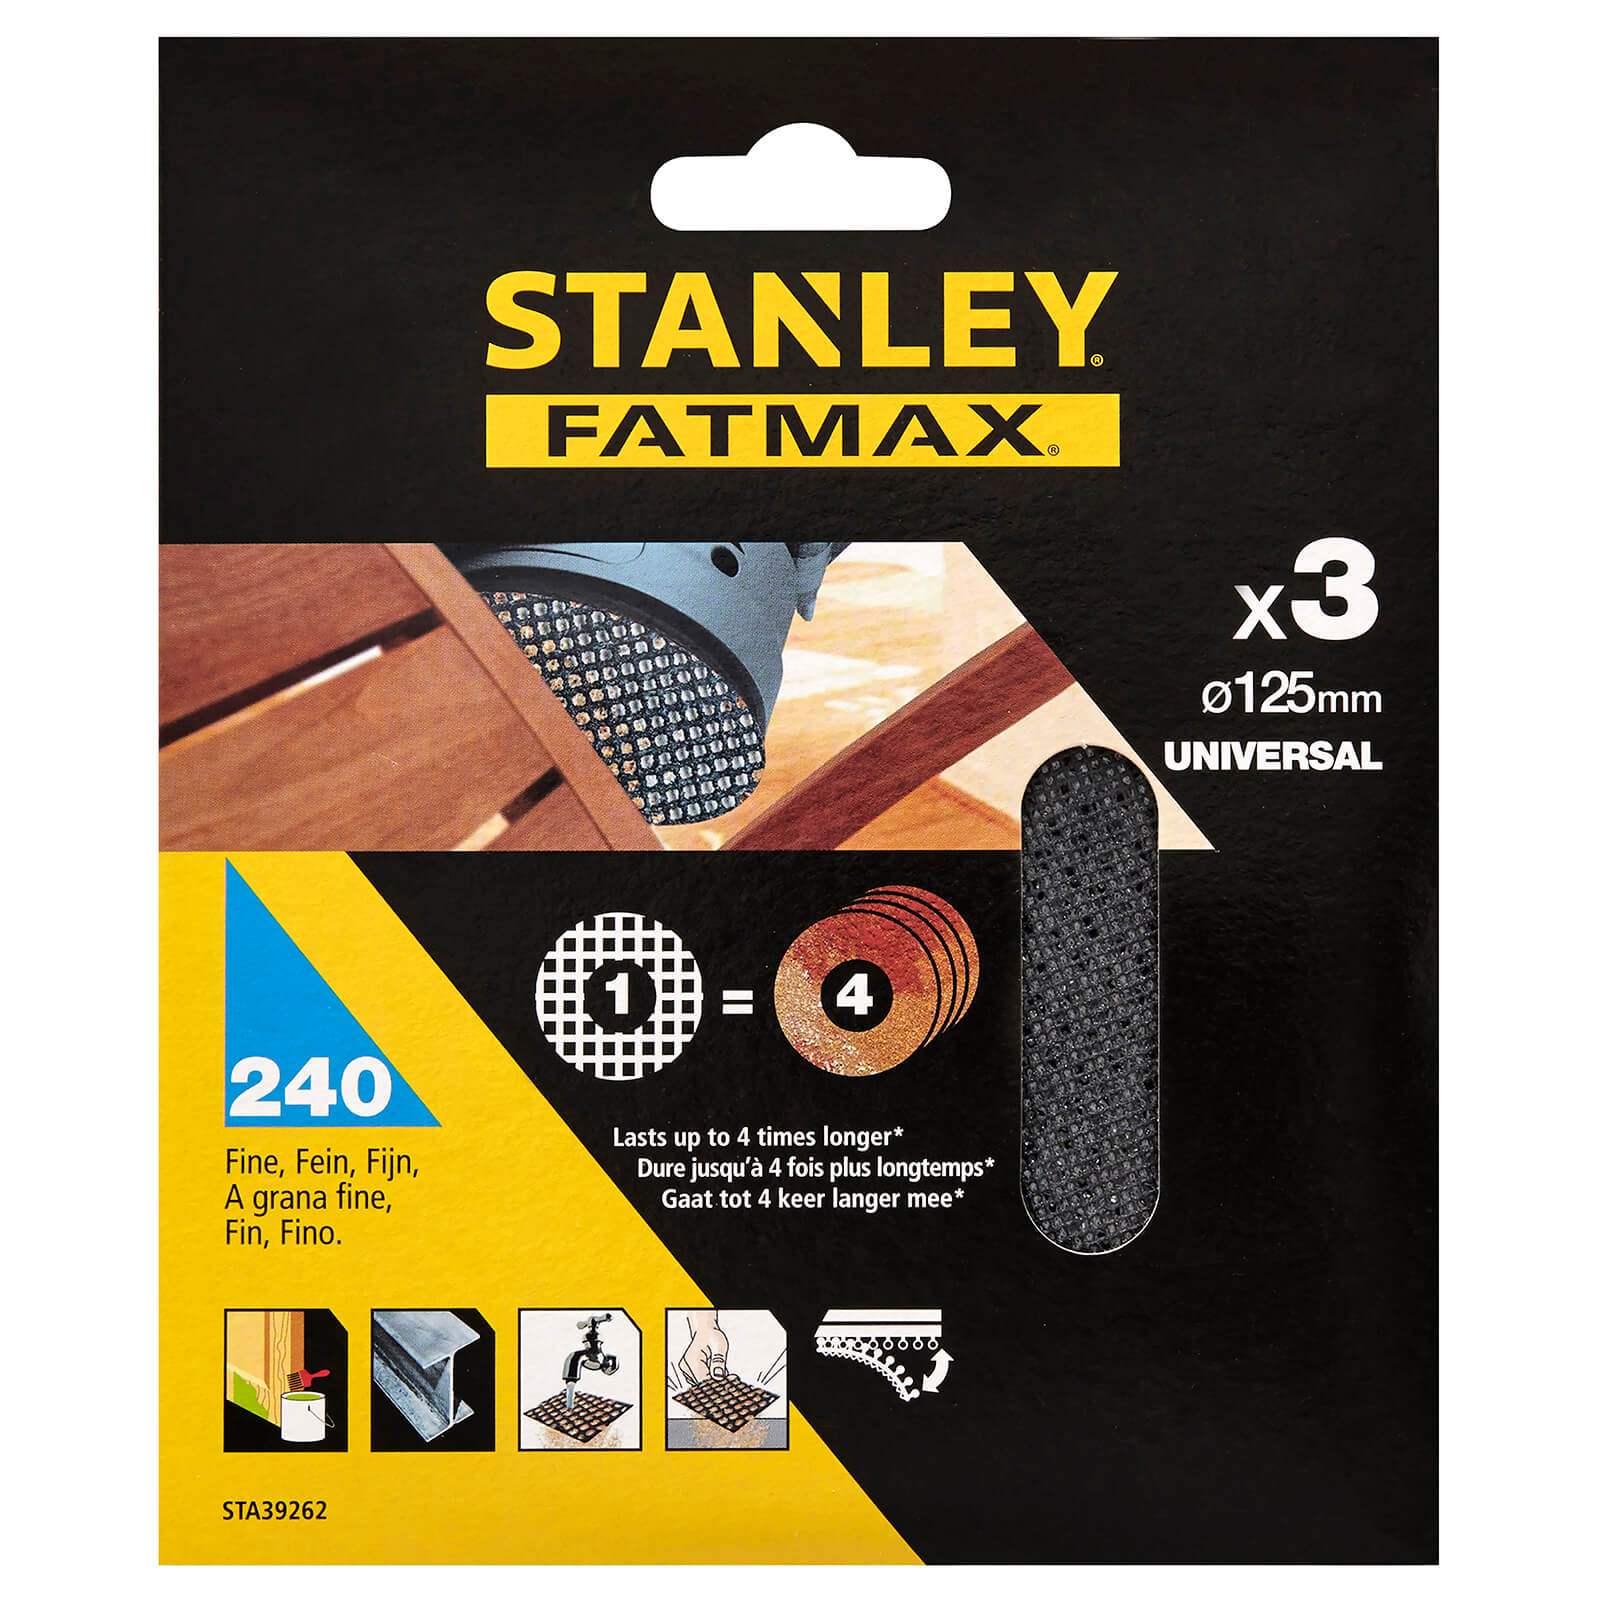 STANLEY FATMAX - 3x 240g Quick Fit Random Orbital Sanding Mesh Discs 125mm